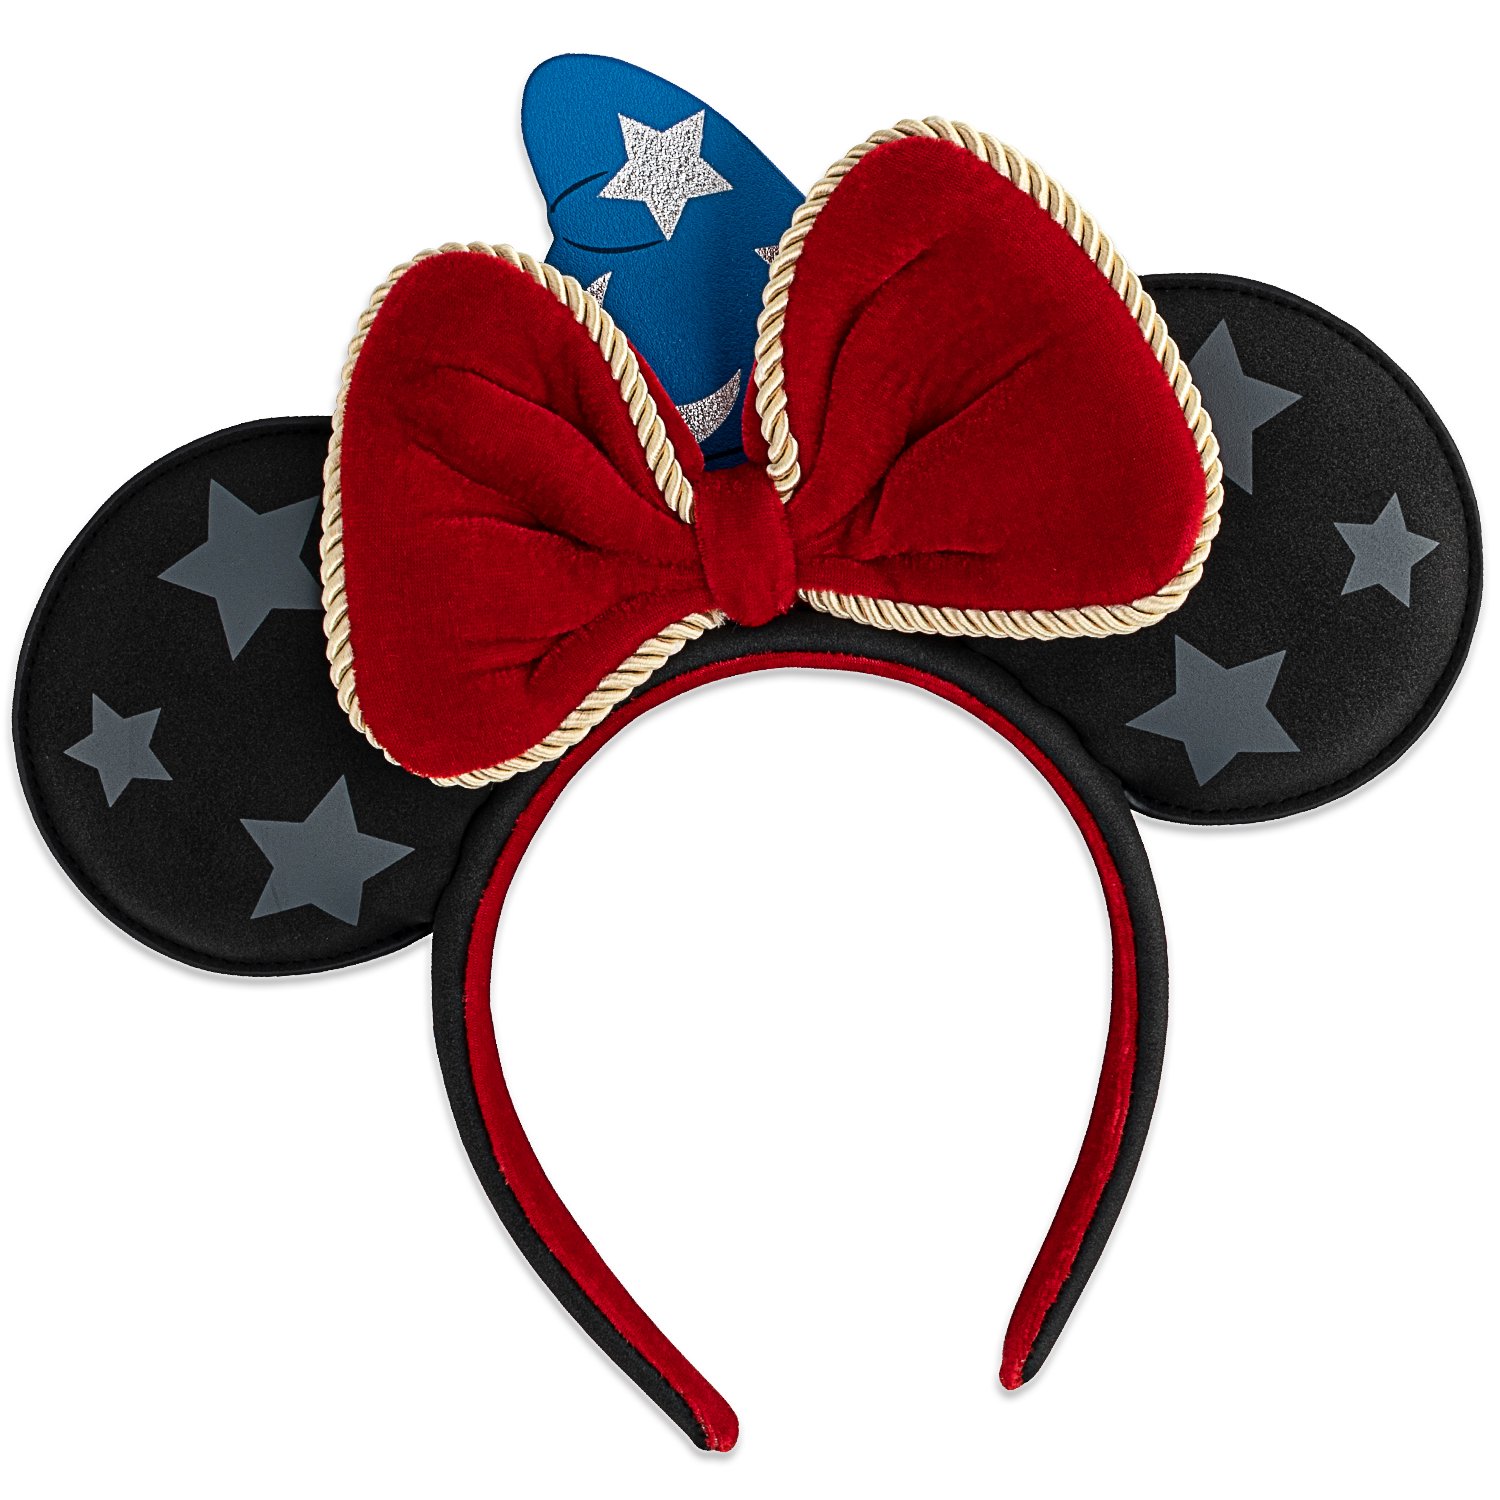  Disney Fantasia Sorcerer Mickey Ears Headband by Loungefly image